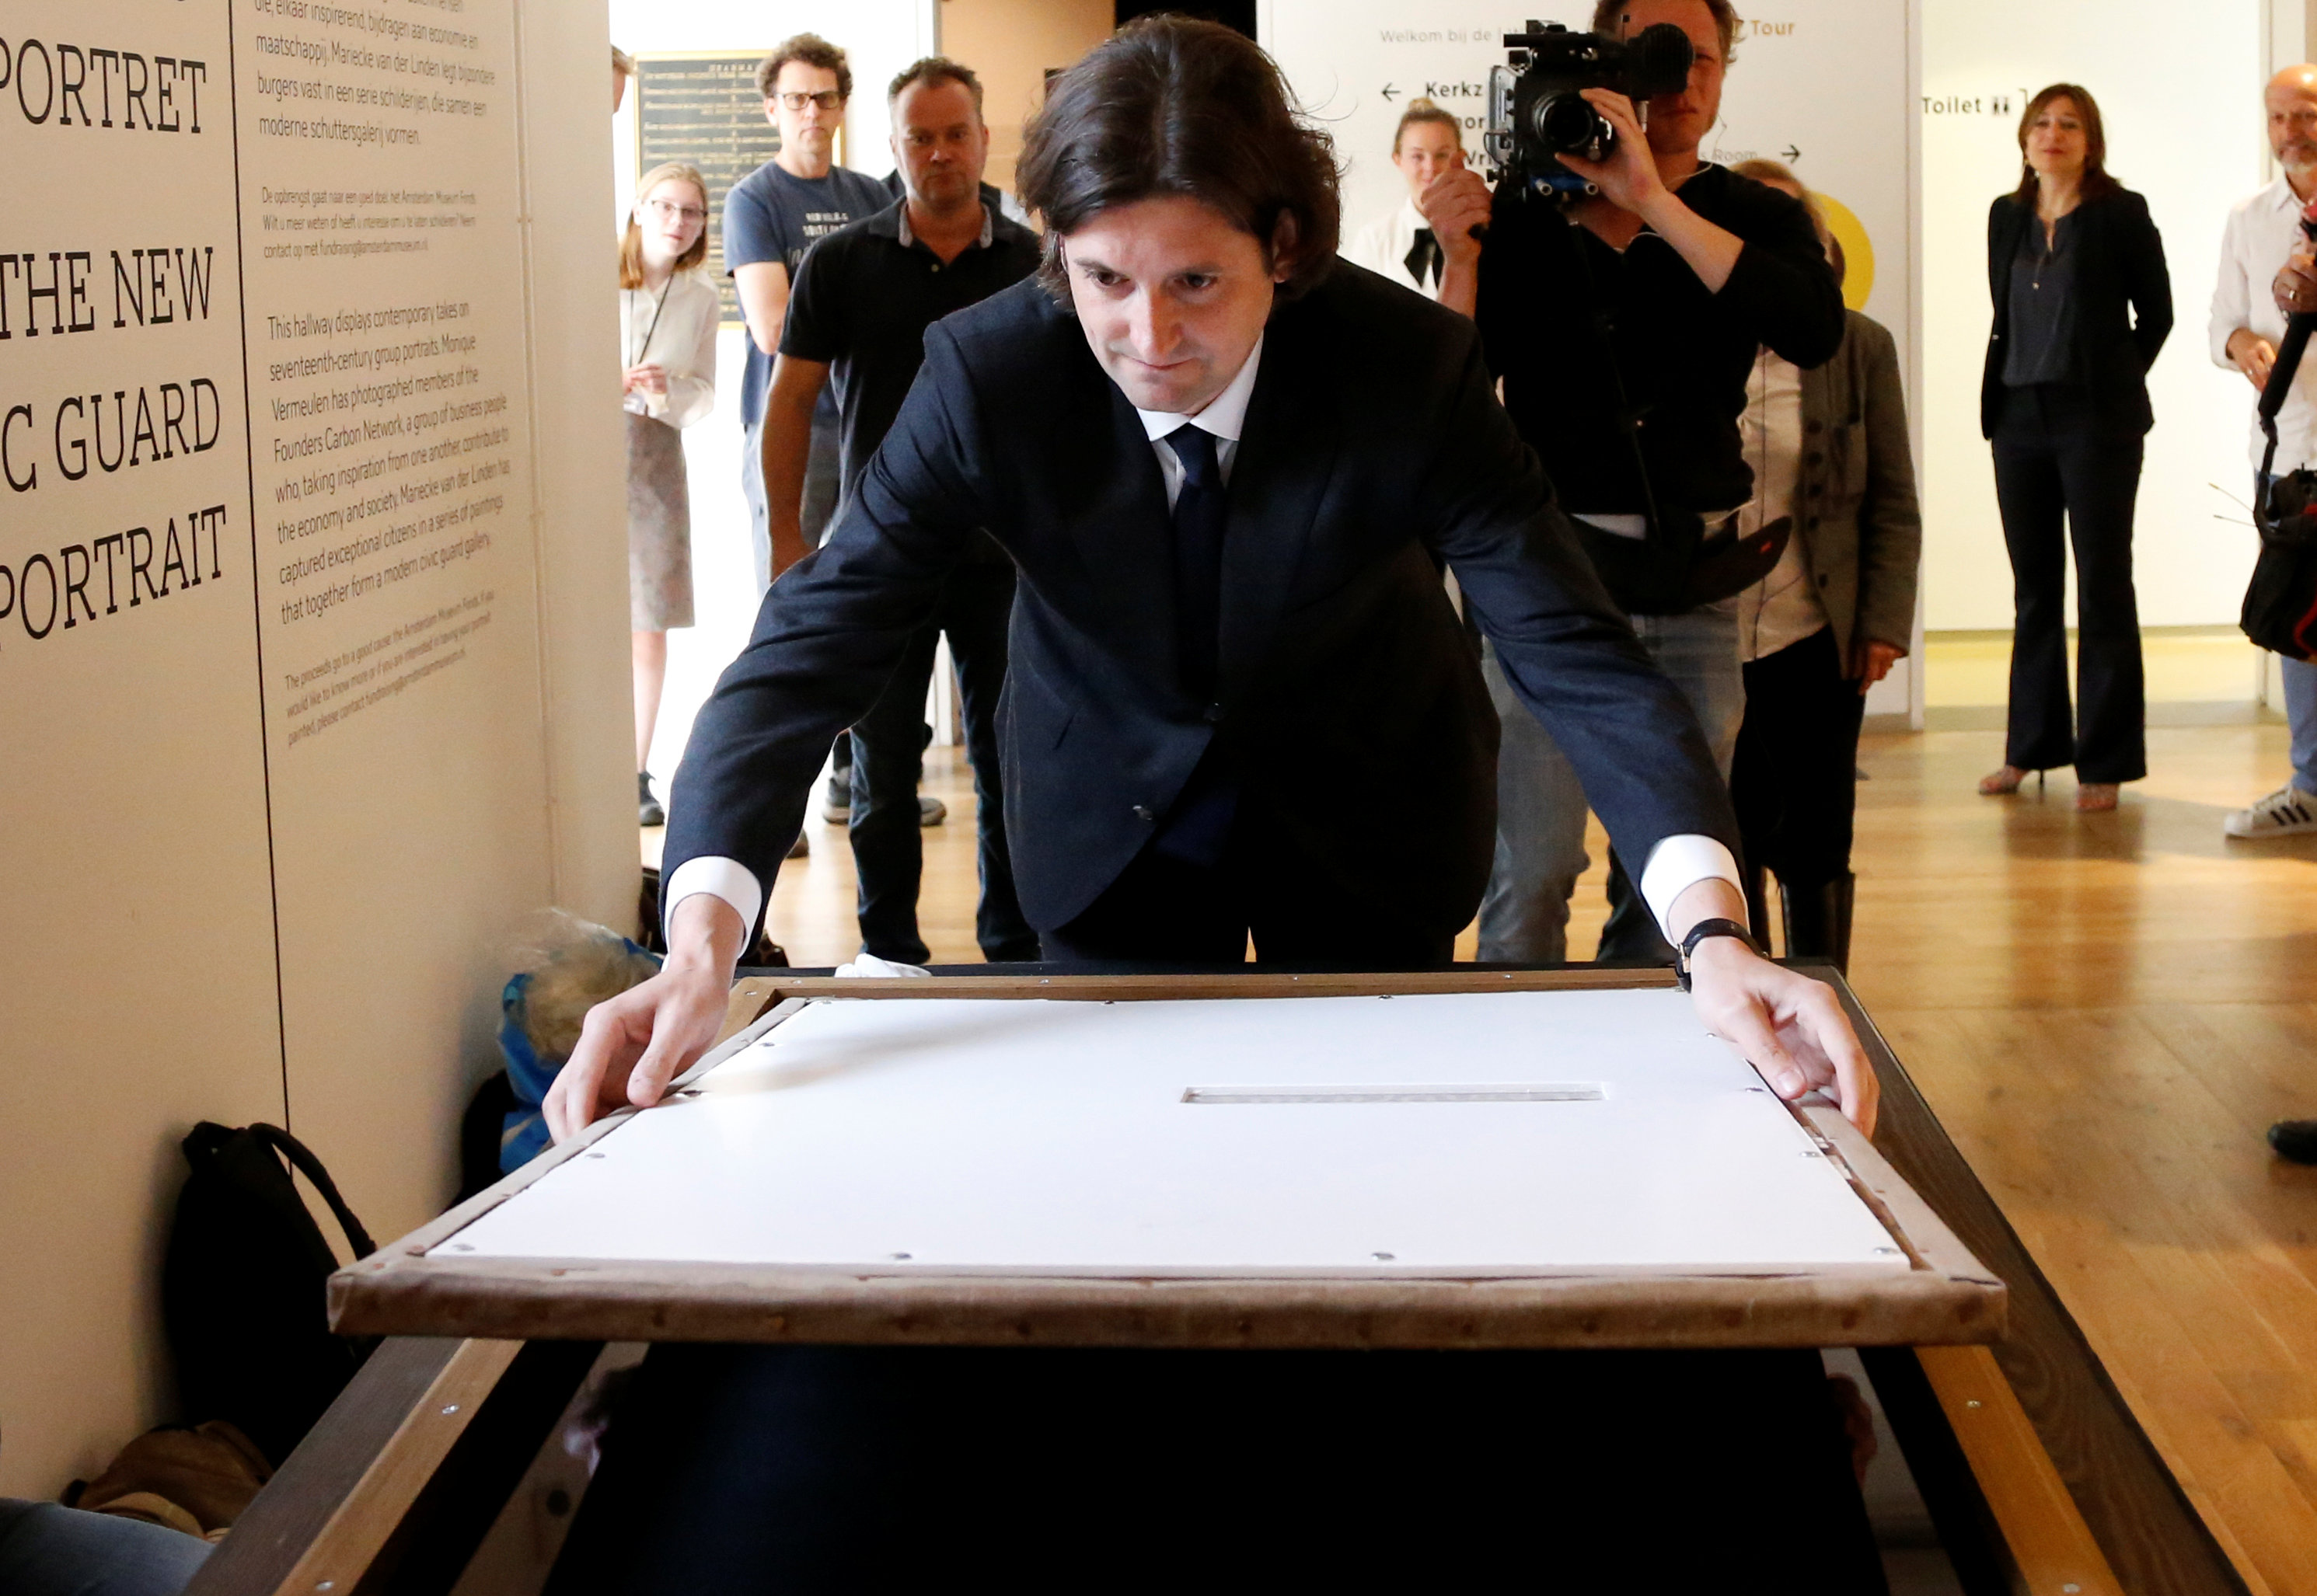 تاجر التحف الفنية الهولندي يان سيكس ينقل اللوحة